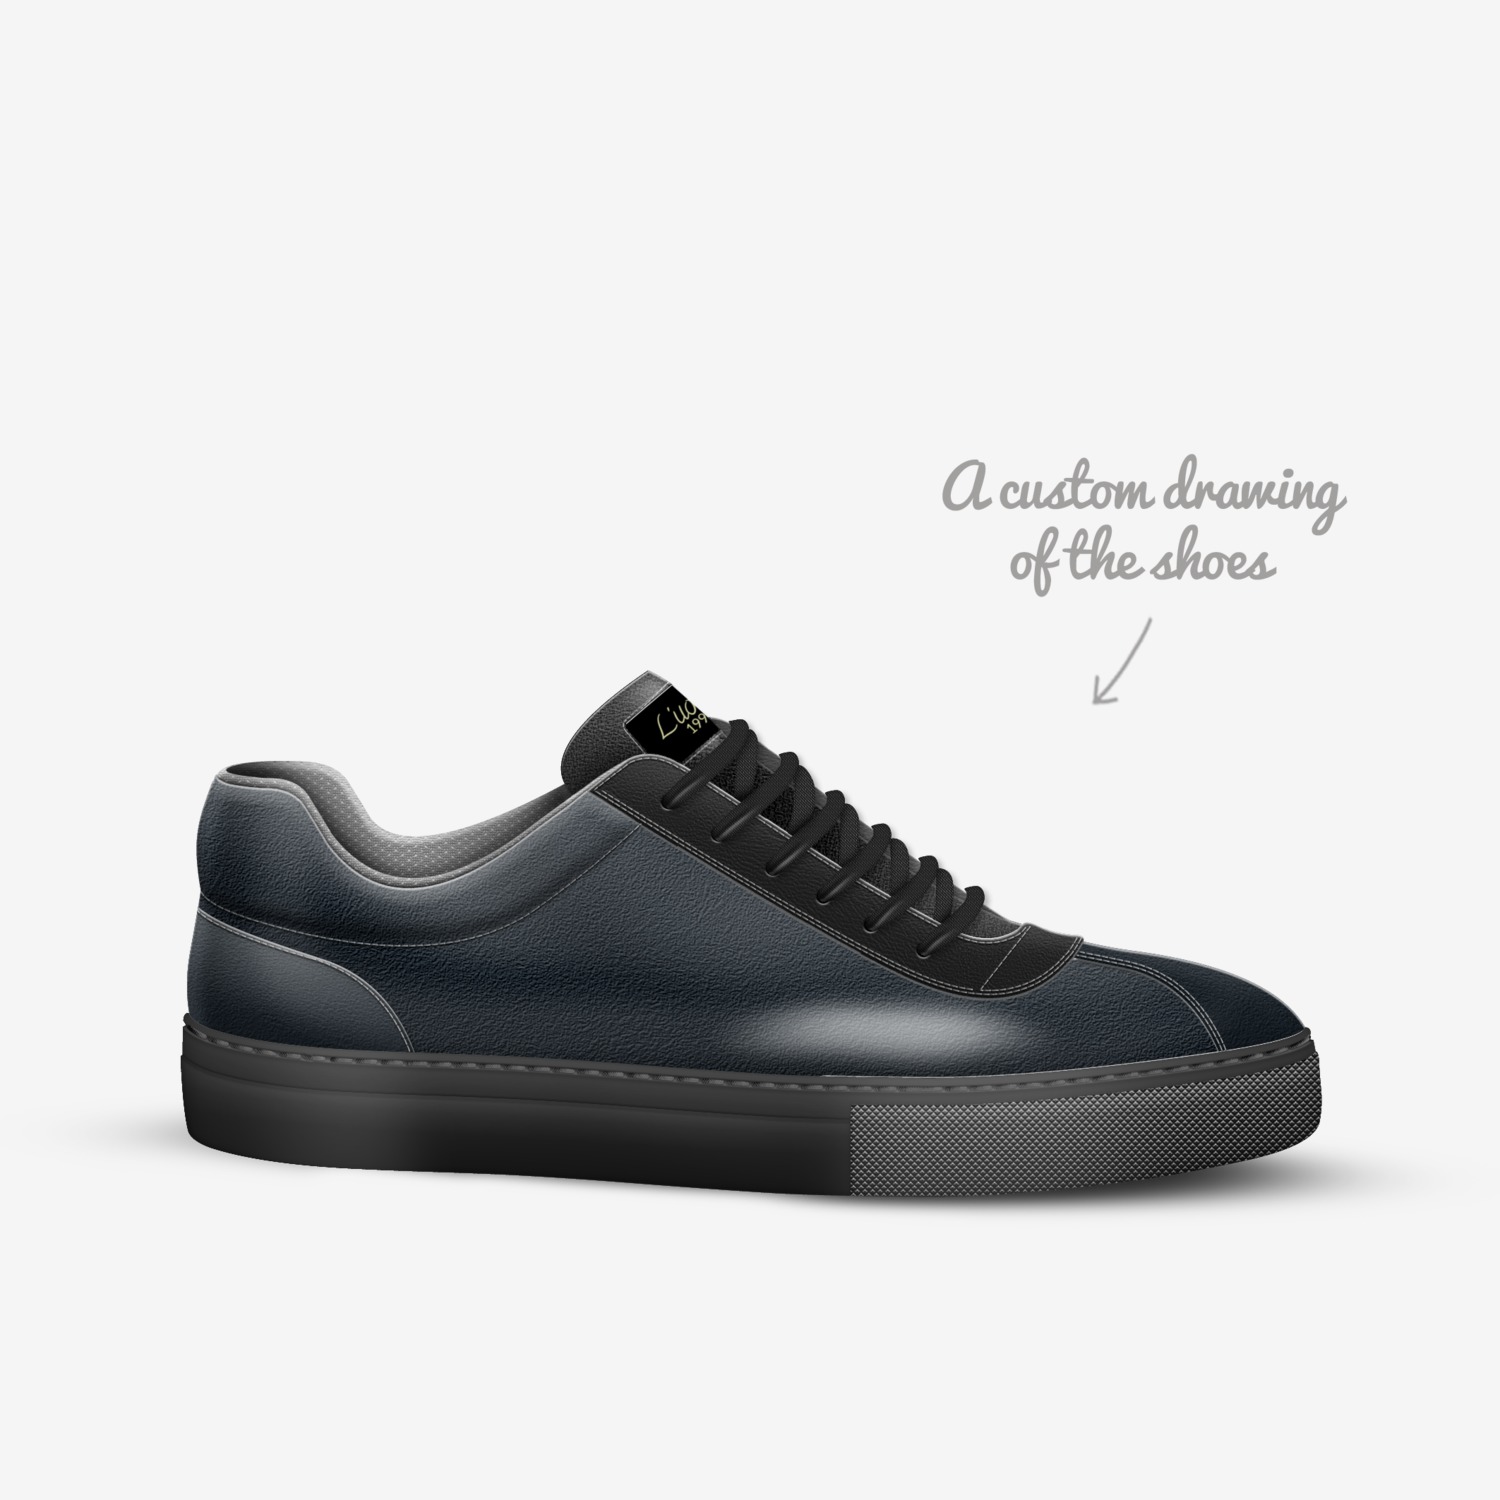 L'uomo Footwear | A Custom Shoe concept by Kieran Saunders